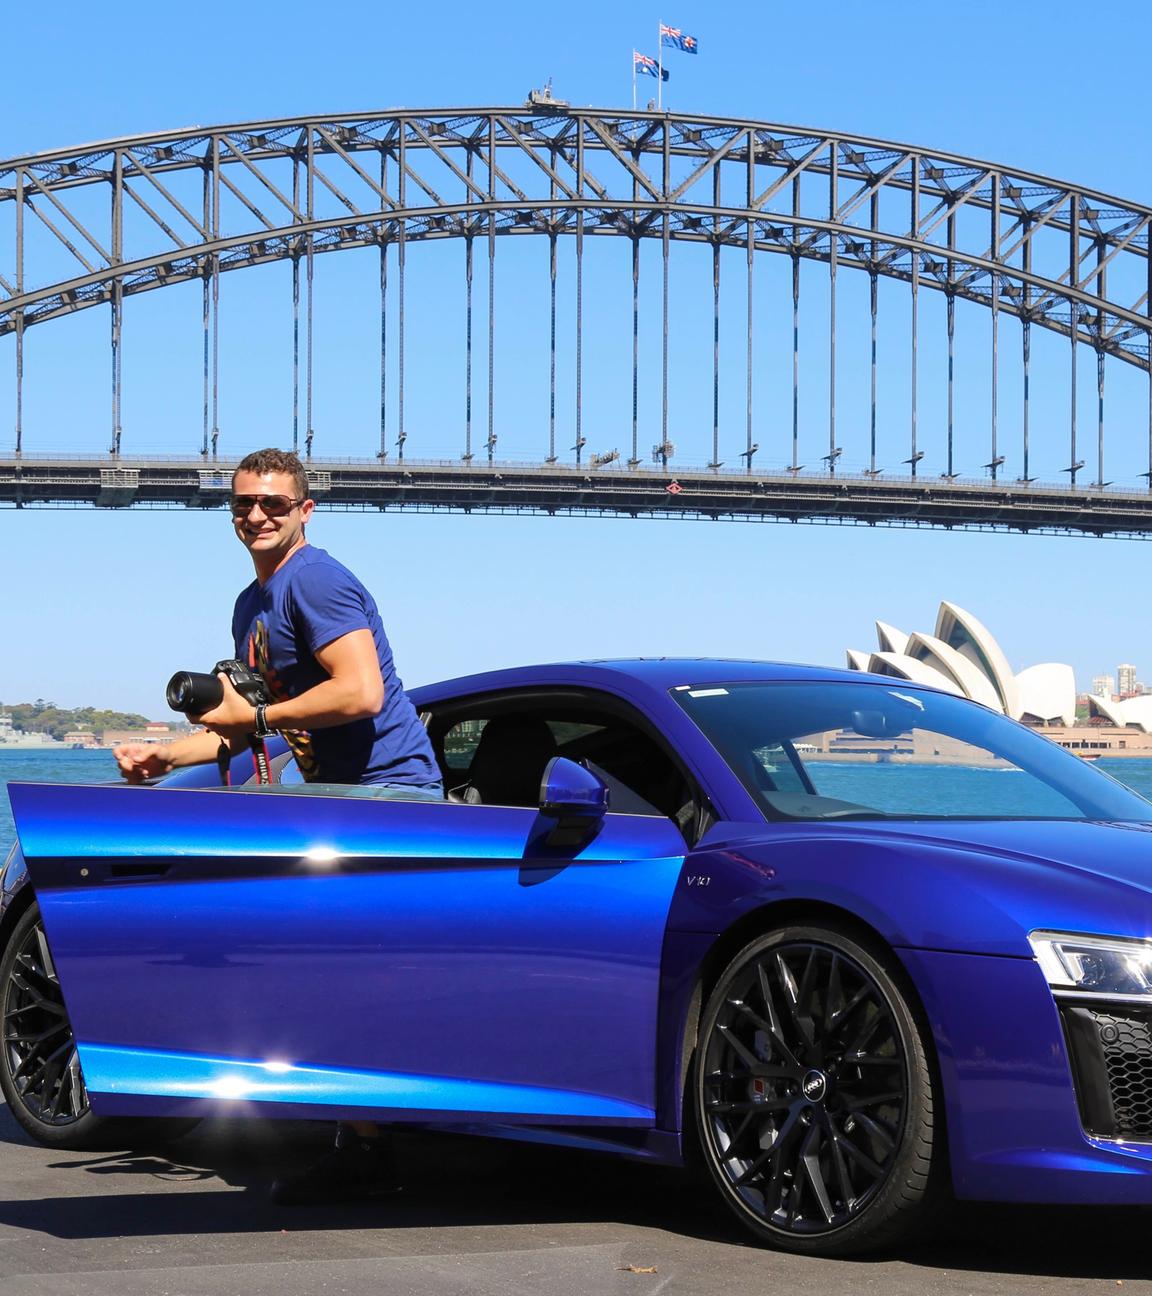 Anthony Koletti steigt aus seinem blauen Sportwagen aus. Im Hintergrund steht die Oper von Sydney, davor führt eine Brücke über ein Gewässer.